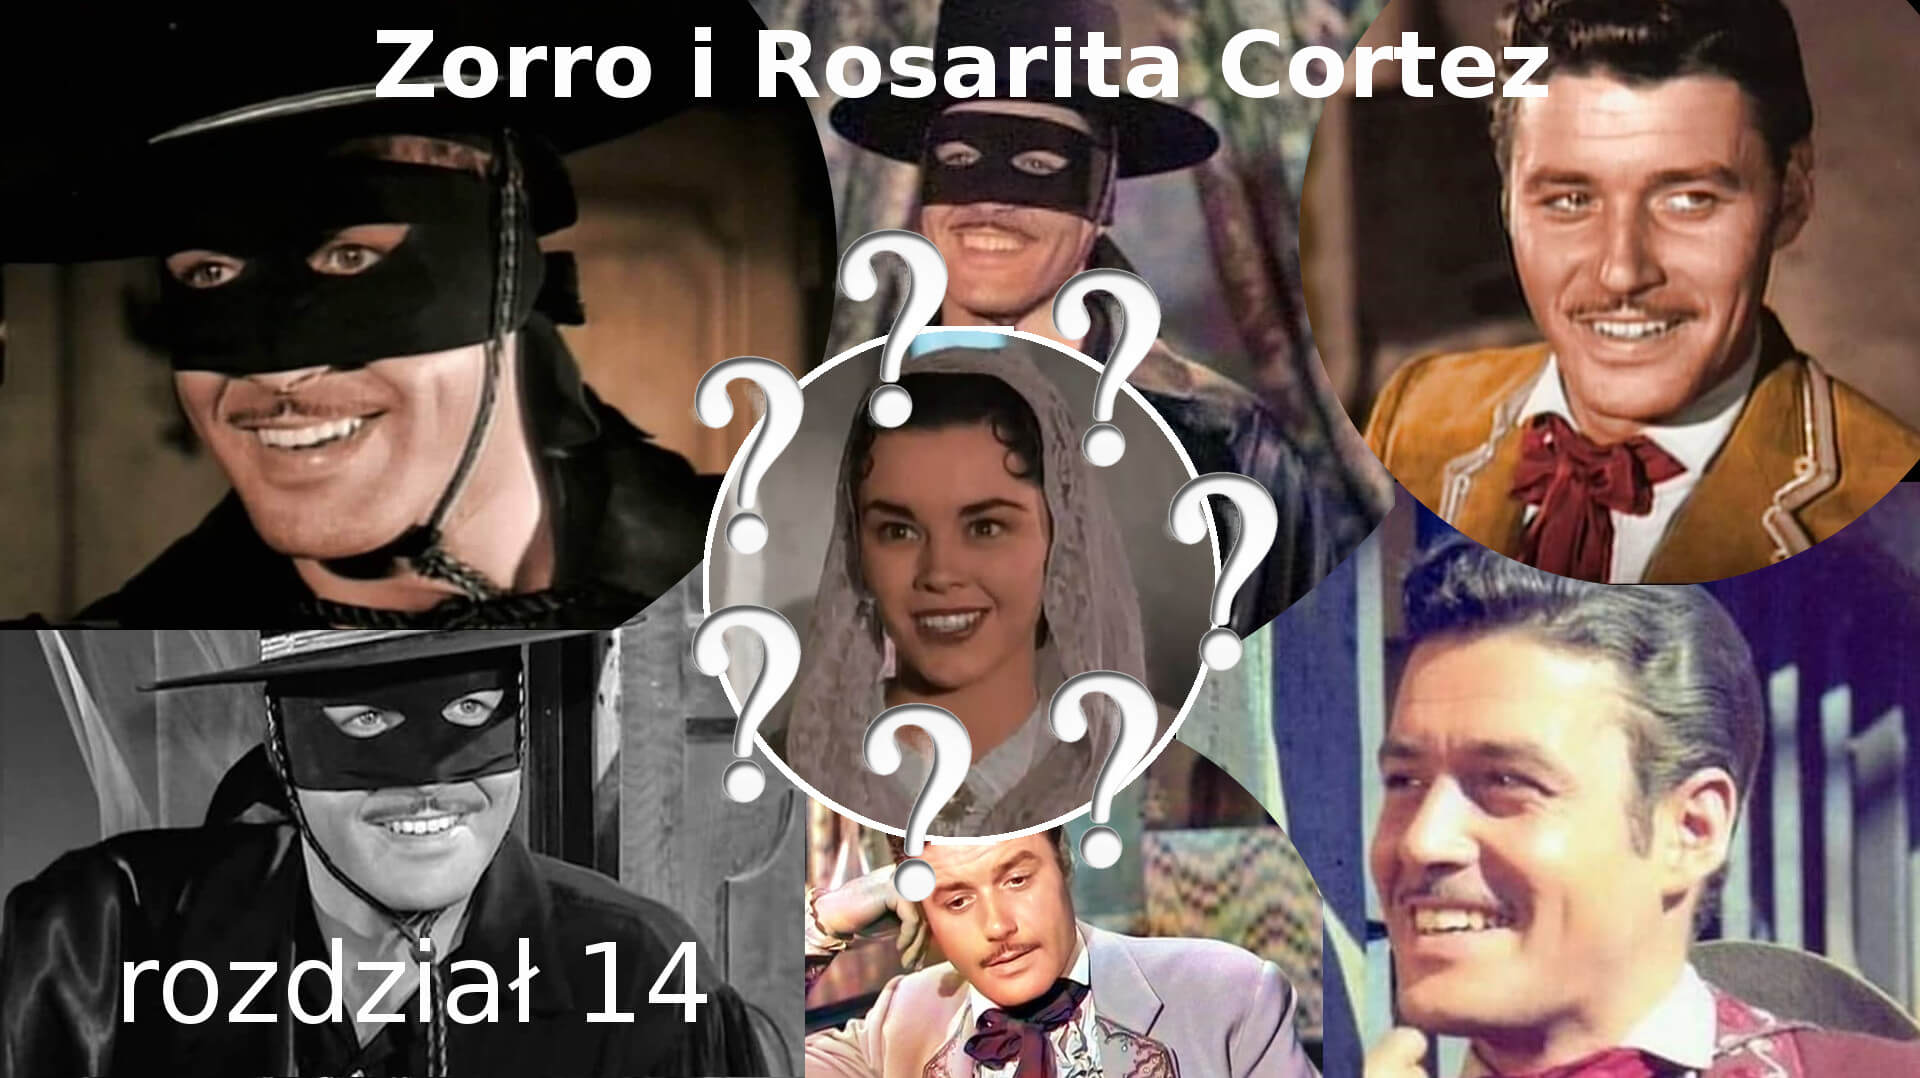 Zorro i Rosarita Cortez rozdział 14 Zorro fanfiction